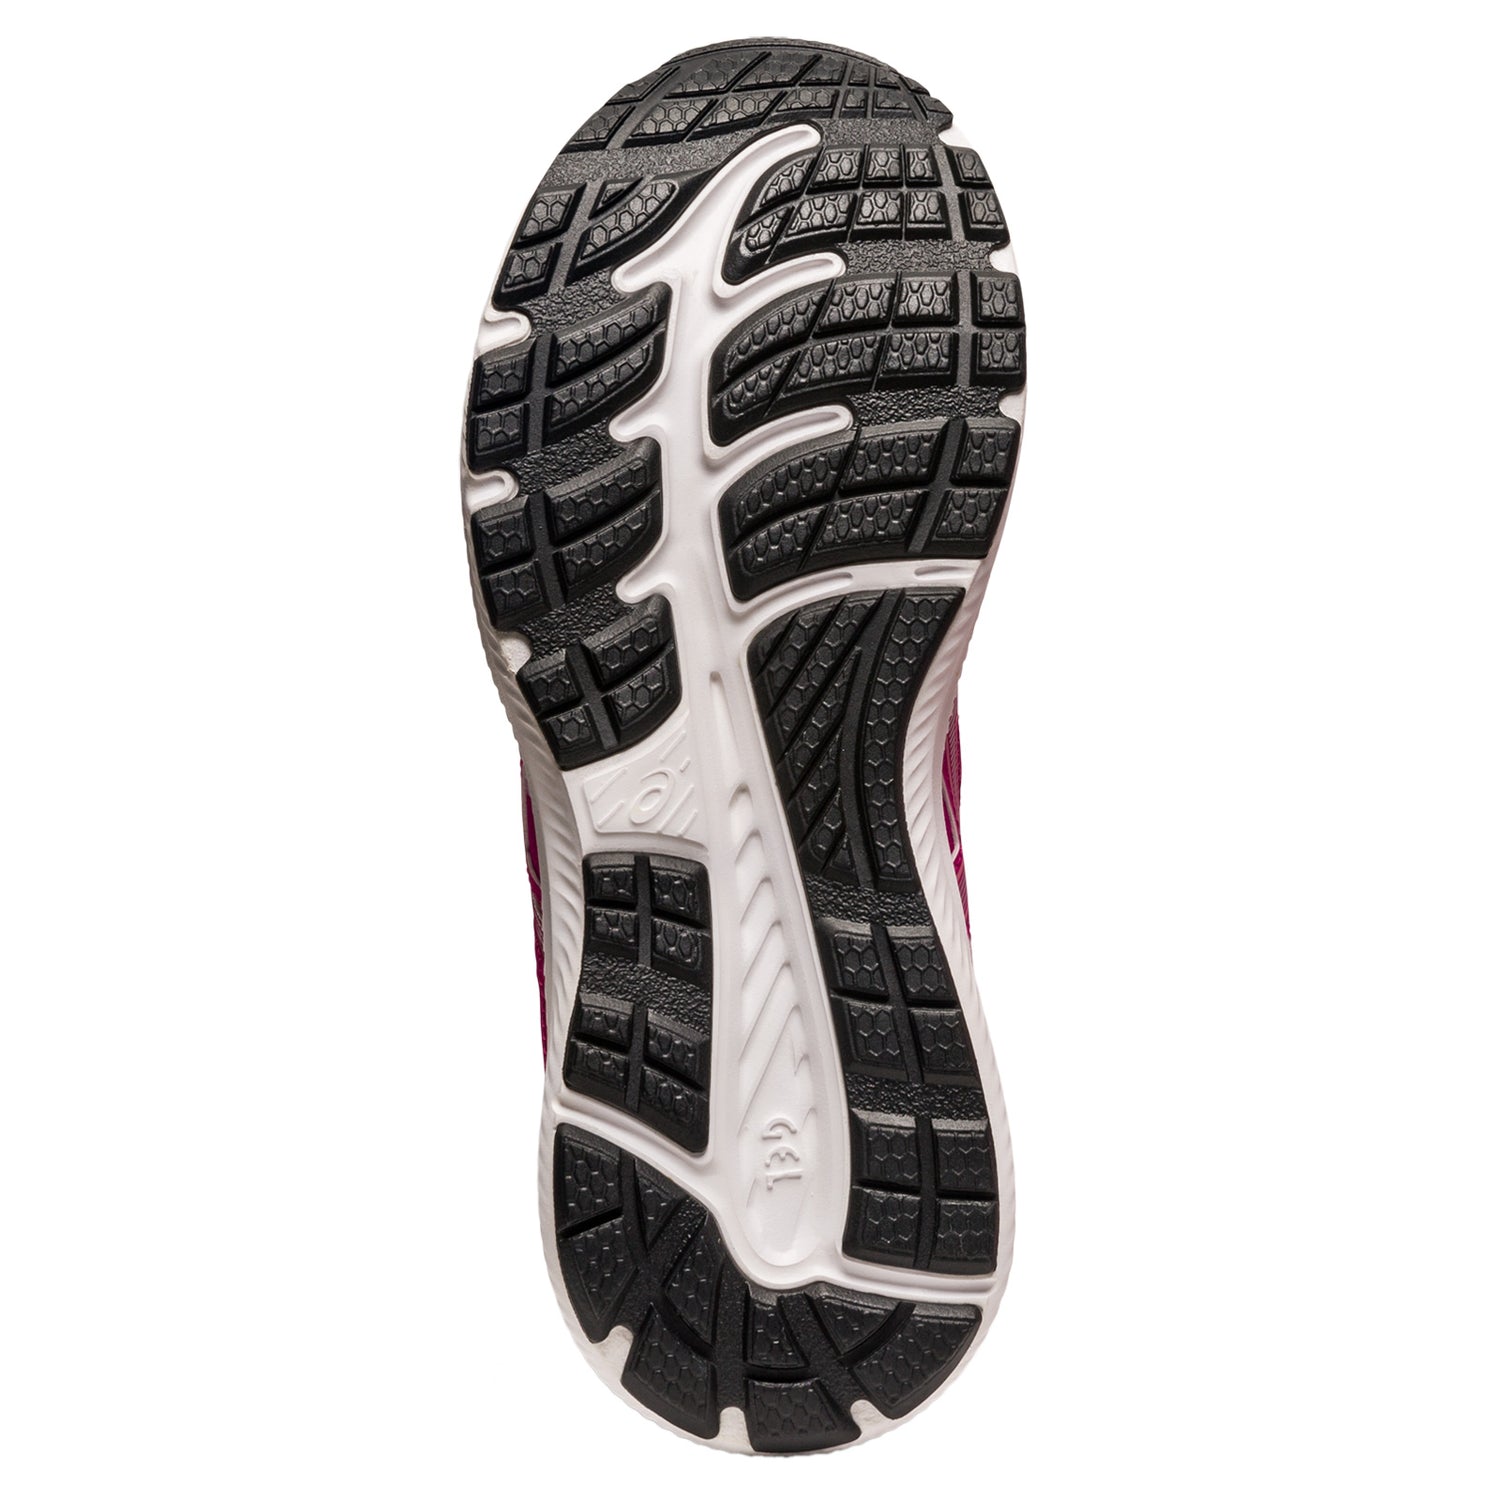 Peltz Shoes  Women's ASICS GEL-Contend 8 Running Shoe PINK SILVER 1012B320-701